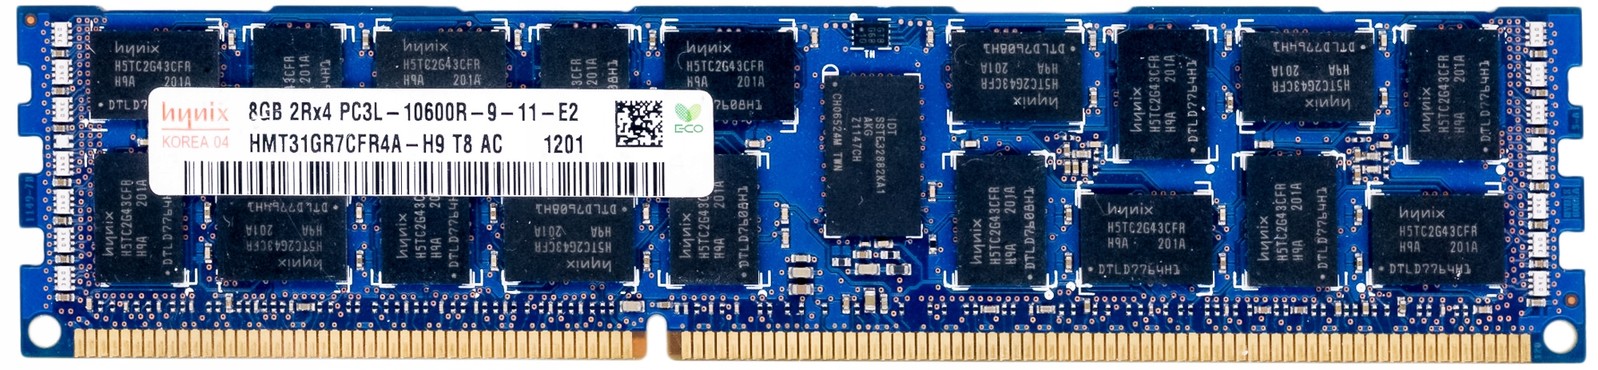 Hynix HMT31GR7CFR4A-H9 8GB DDR3 1333MHz Reg Ecc